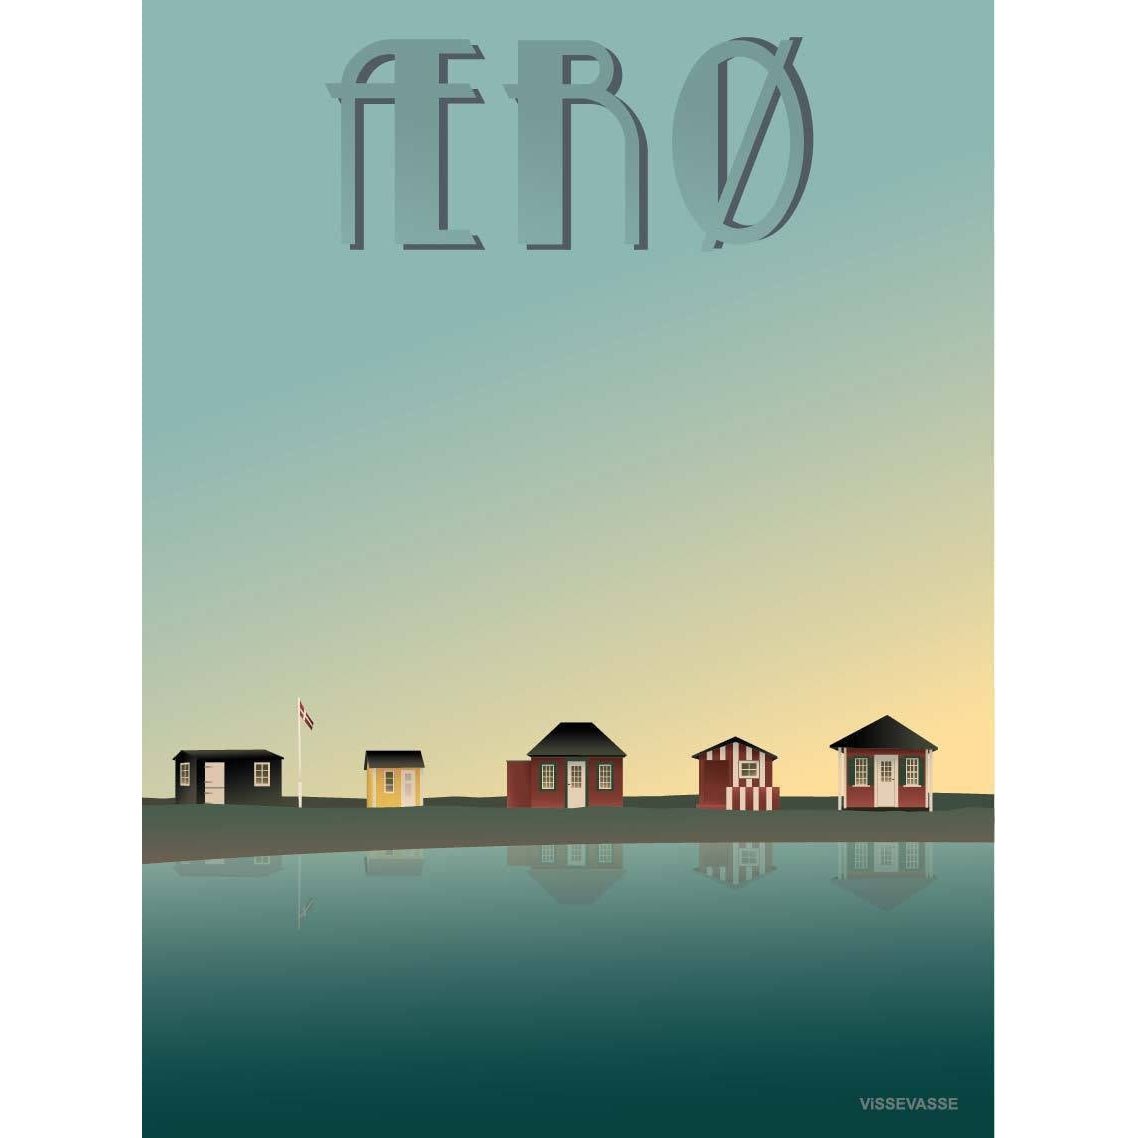 Vissevasse Ærø Poster de cabañas de playa, 15 x21 cm